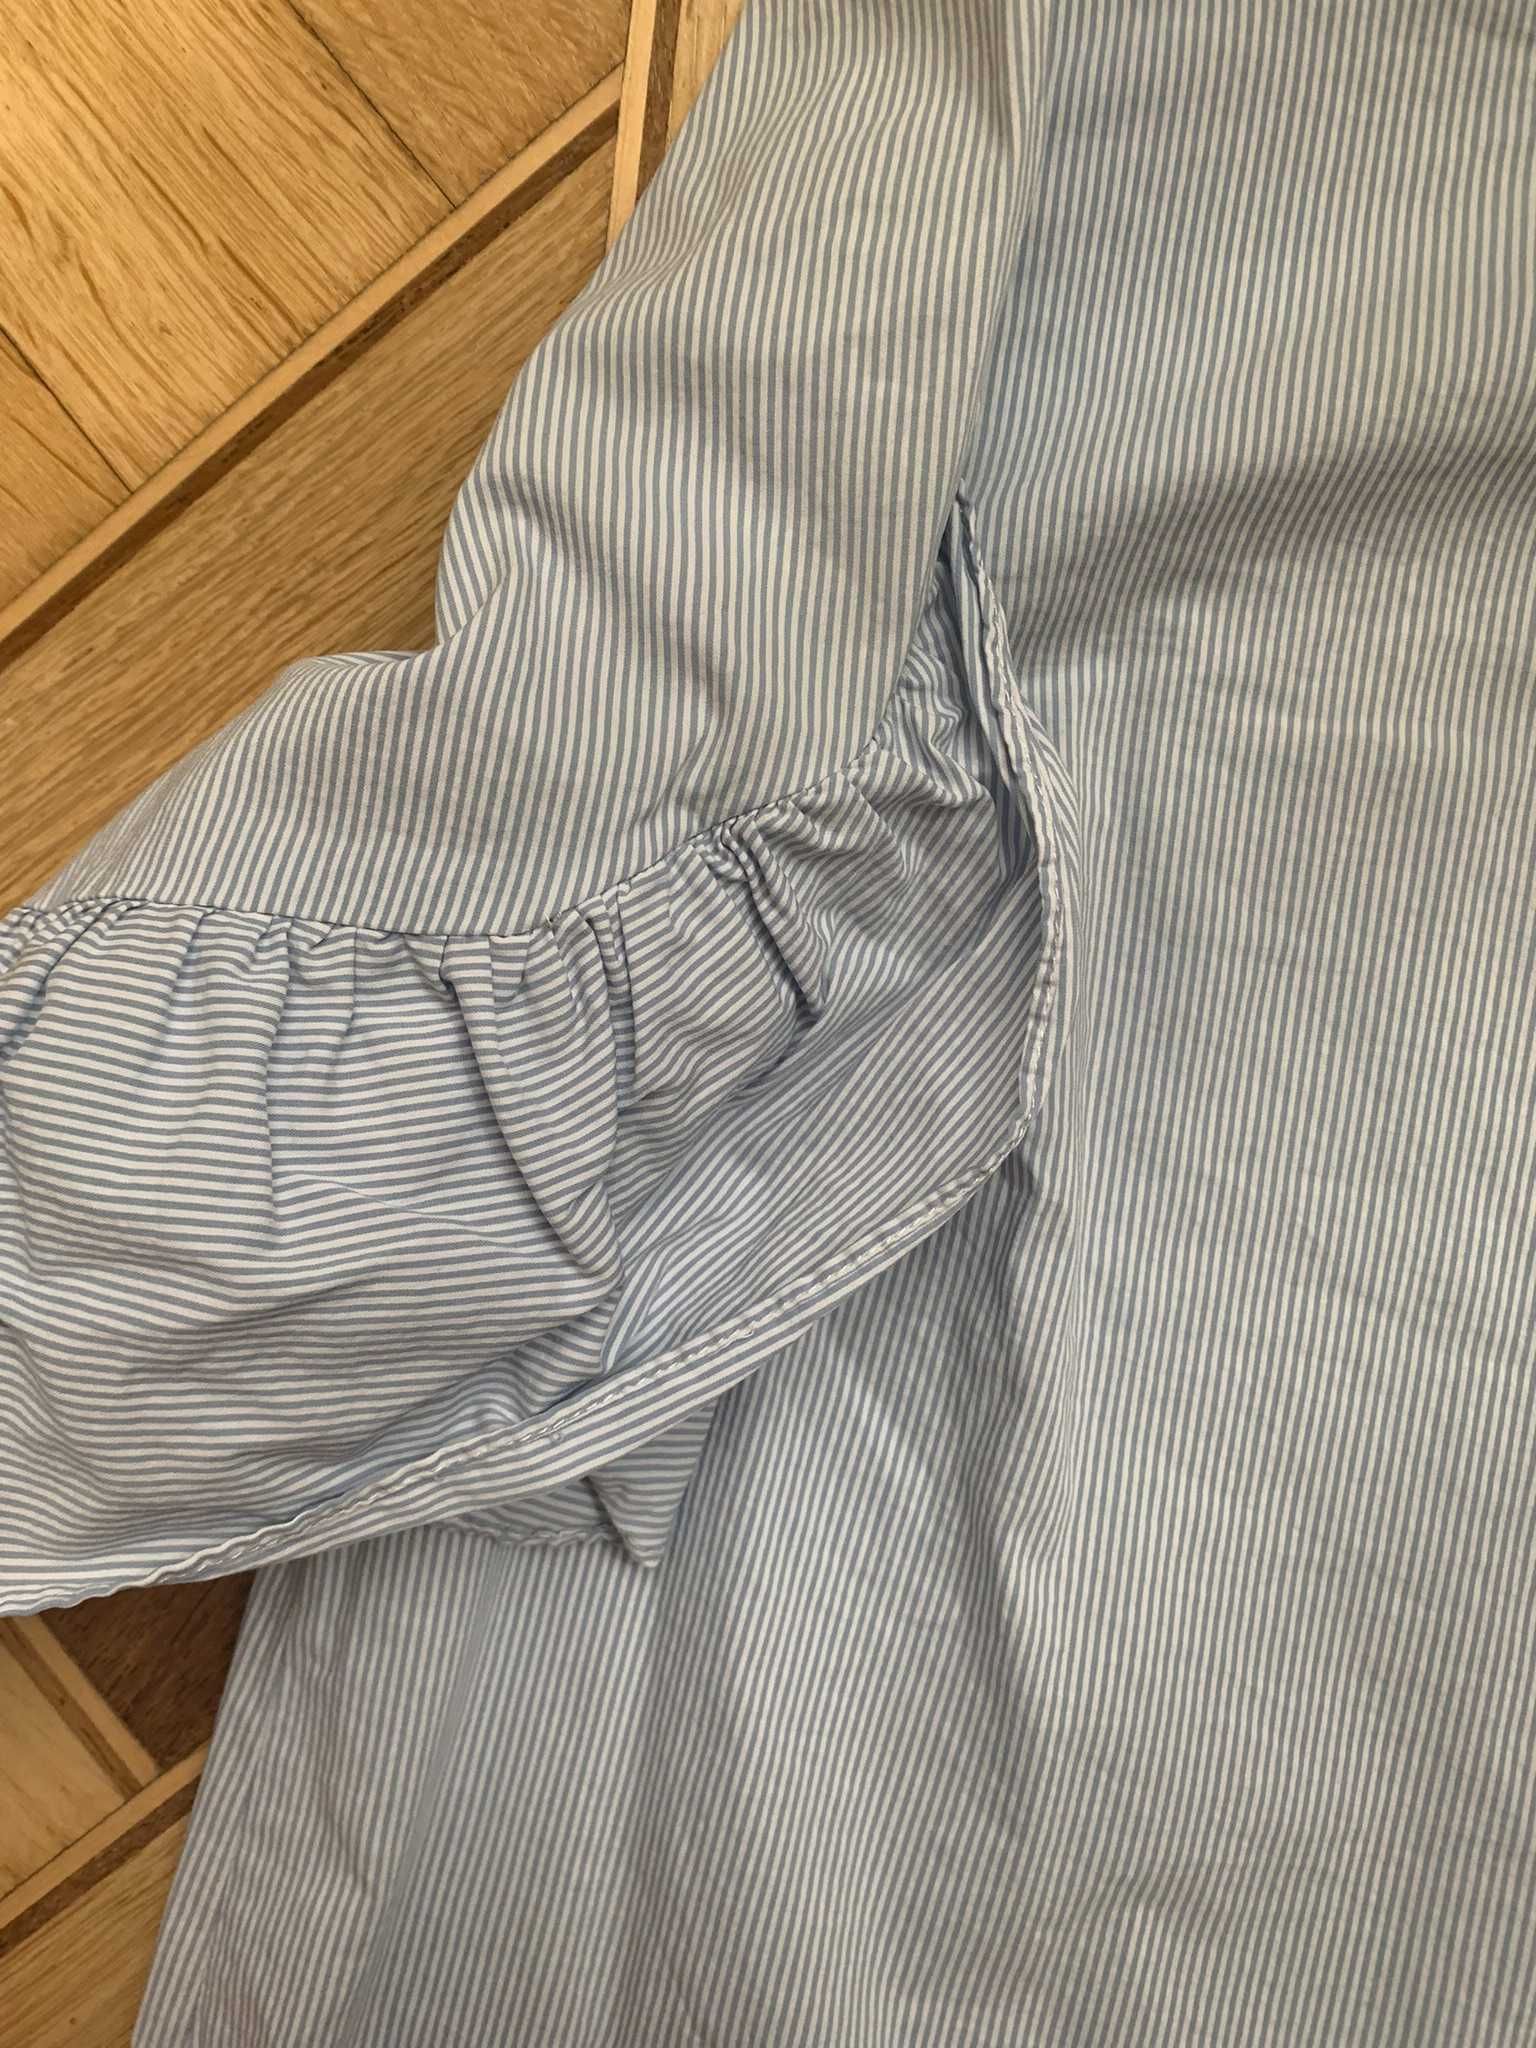 mango голубая блузка в мелкую полоску короткая размер M-L